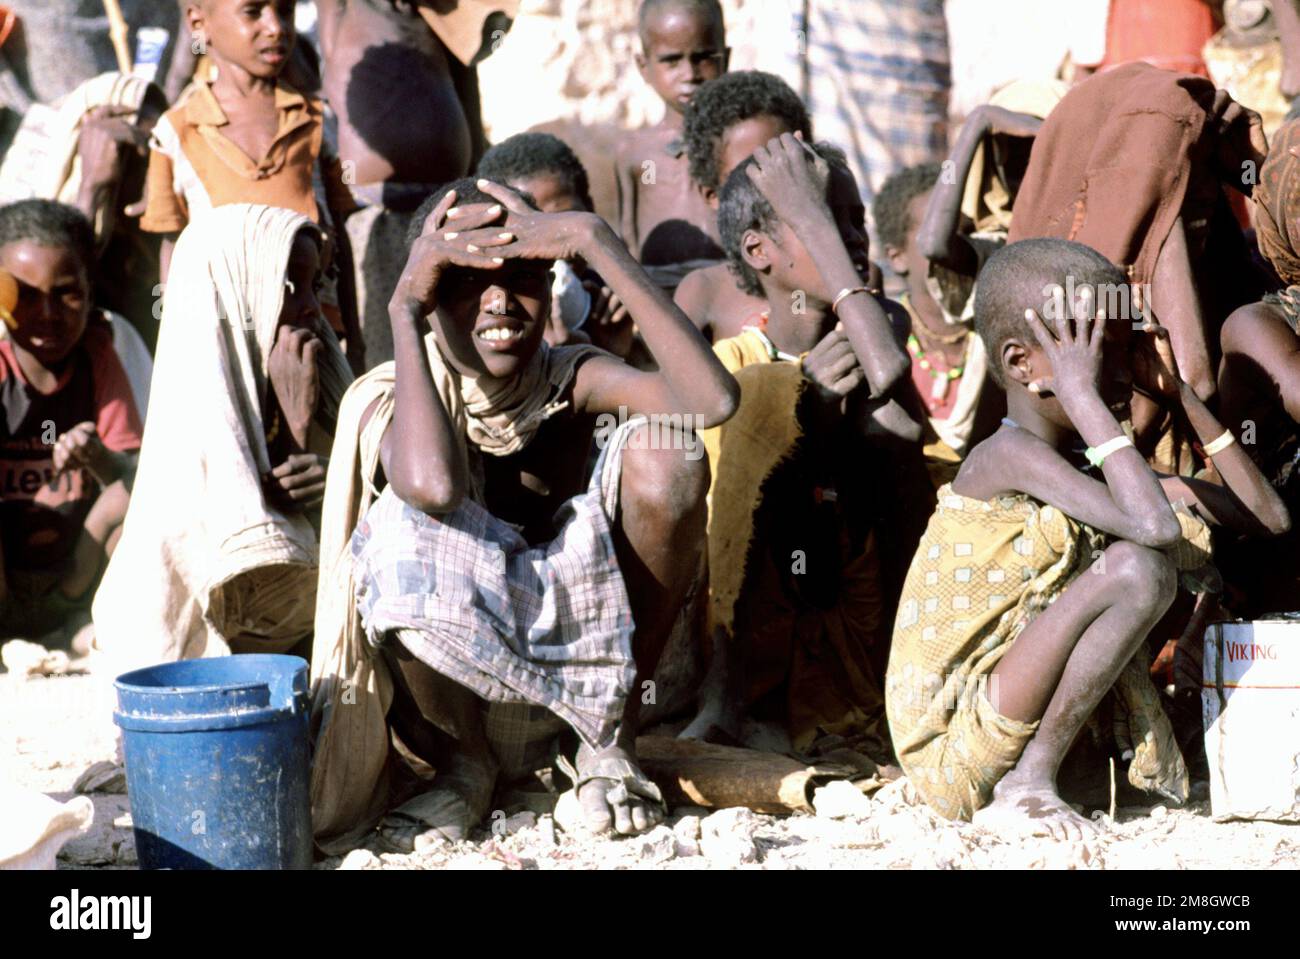 I somaliani si siedono al sole mentre attendono il cibo fornito durante l'operazione fornire soccorso, Somalia. Questo segnale è stato uno dei tanti punti di vista presi in considerazione da una delegazione del Congresso. I delegati, diretti dal Rep. John Lewis (D-GA) e dal Rep. Bill Emerson (D-MO), hanno visitato diversi siti di soccorso umanitario per determinare l'impatto degli aiuti statunitensi nel paese assediato. Oggetto operazione/Serie: FORNIRE SOCCORSO Paese: Somalia (SOM) Foto Stock